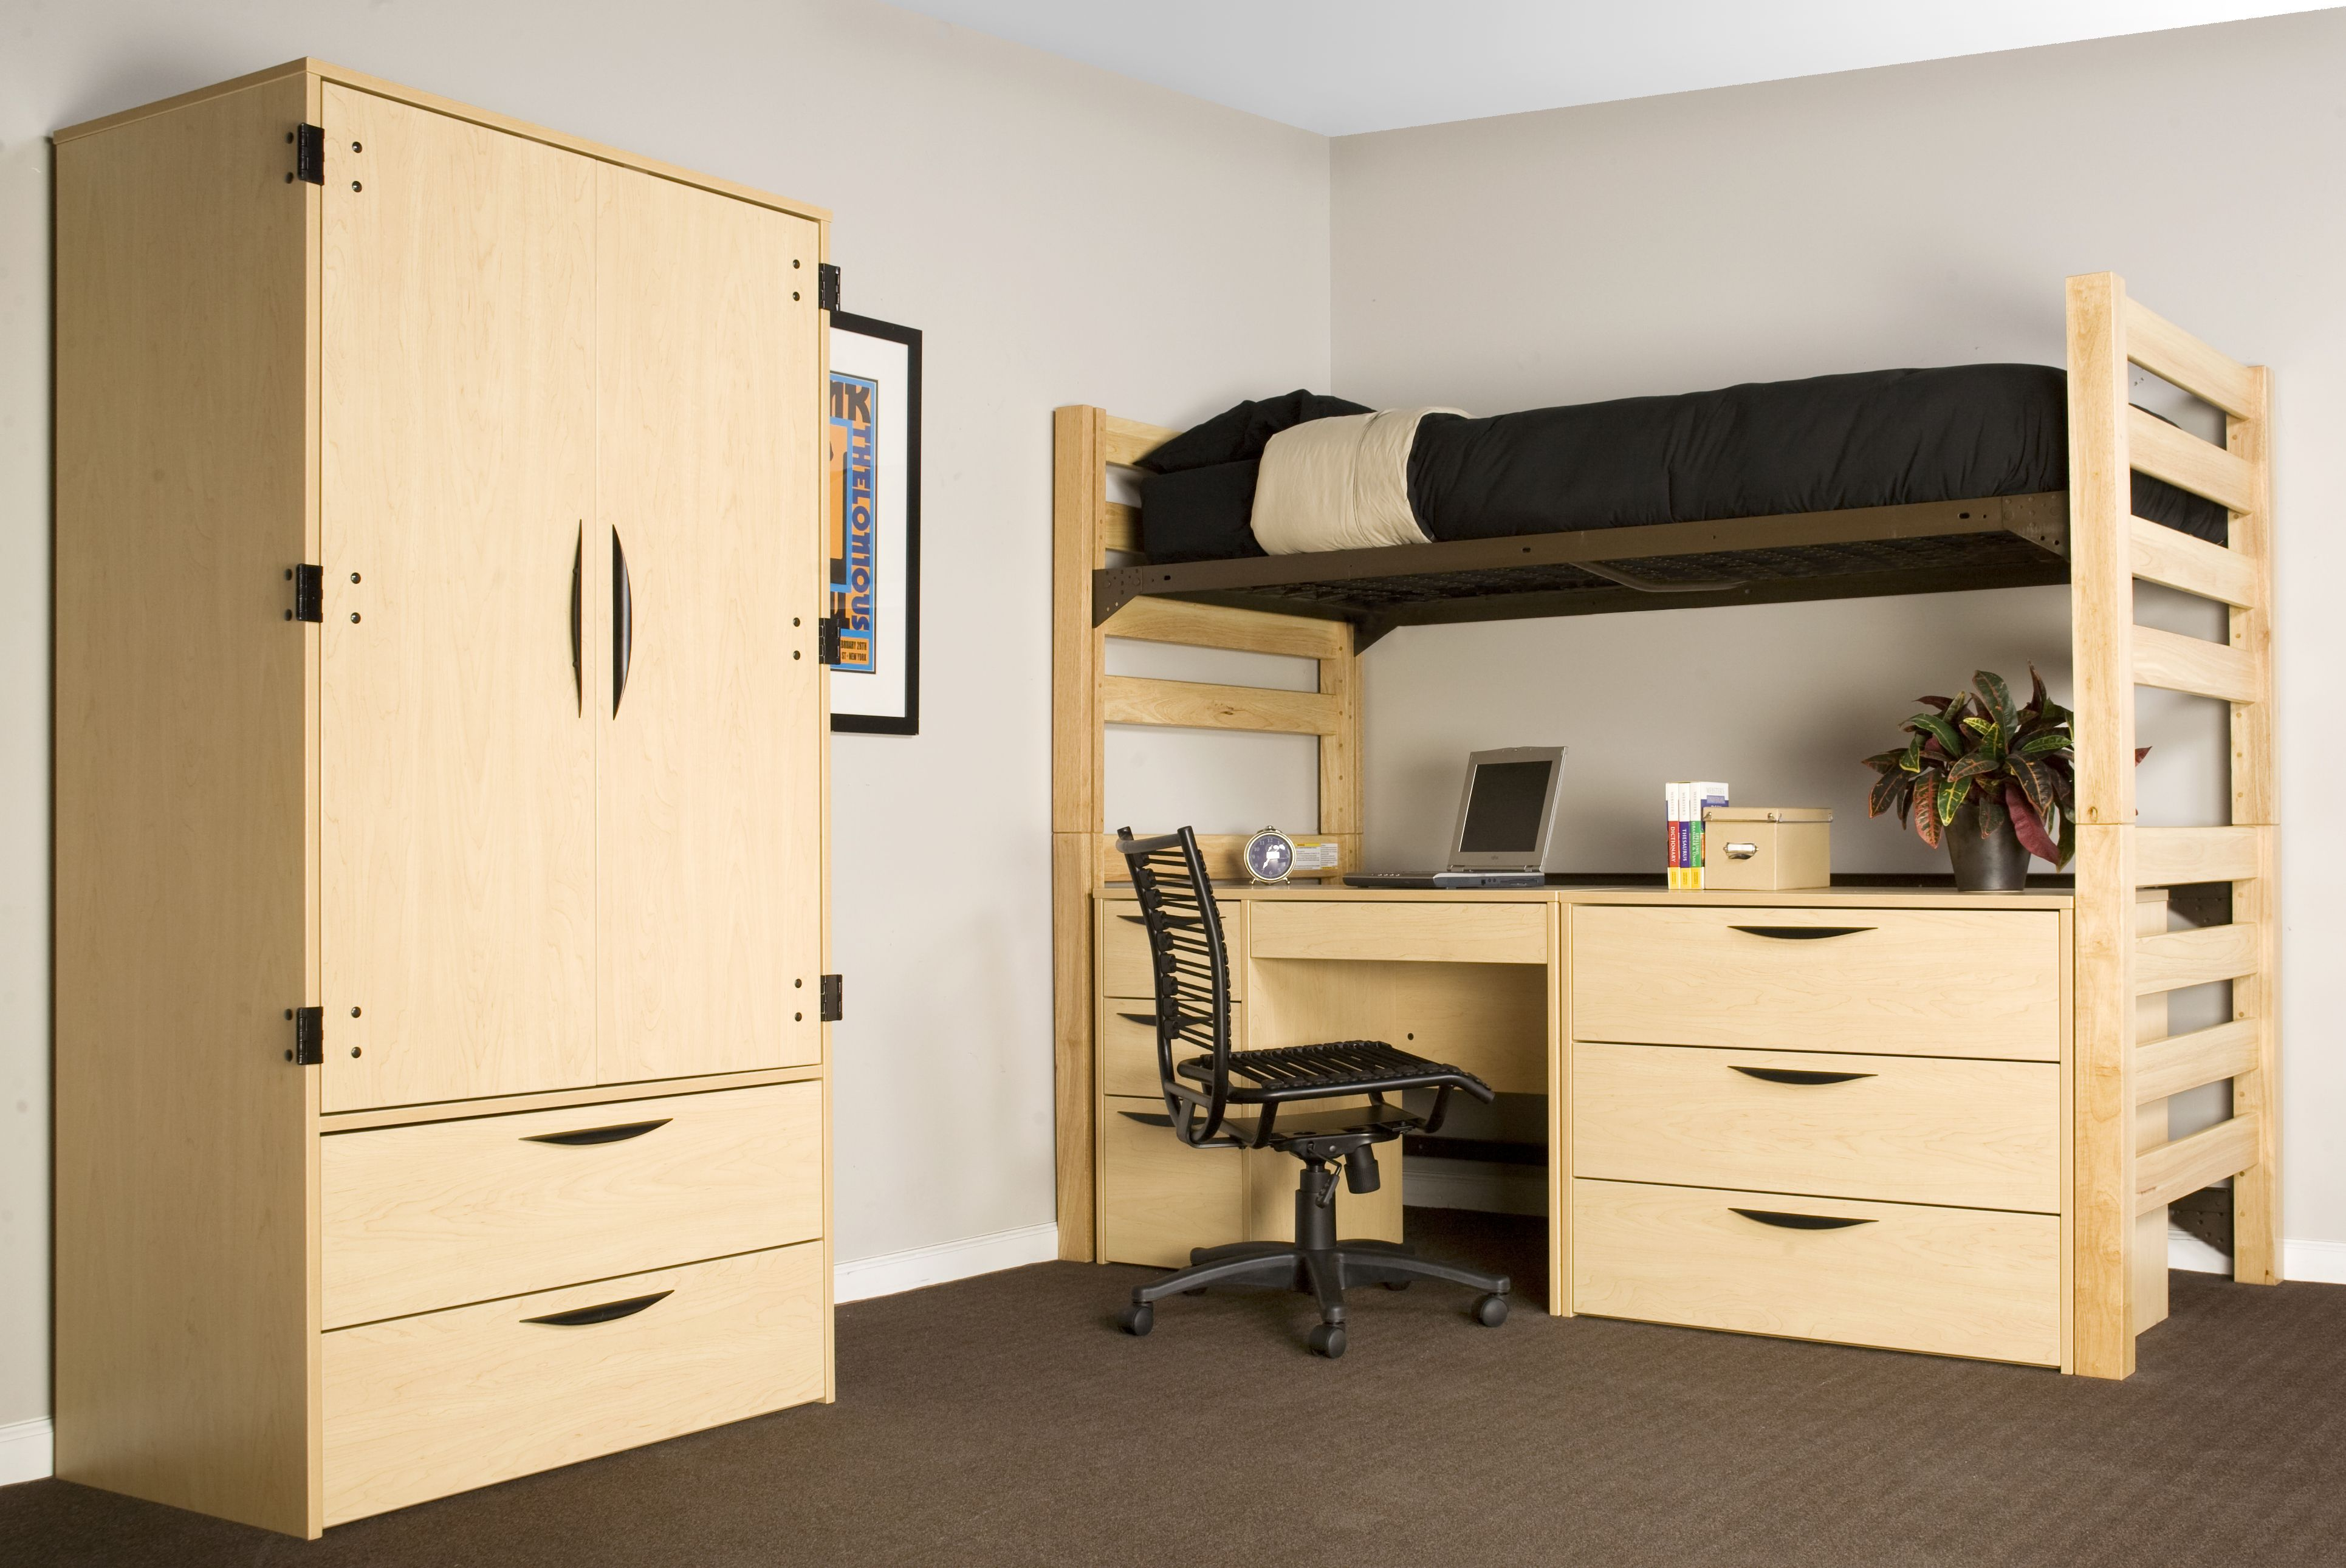 college bedroom apartment furniture